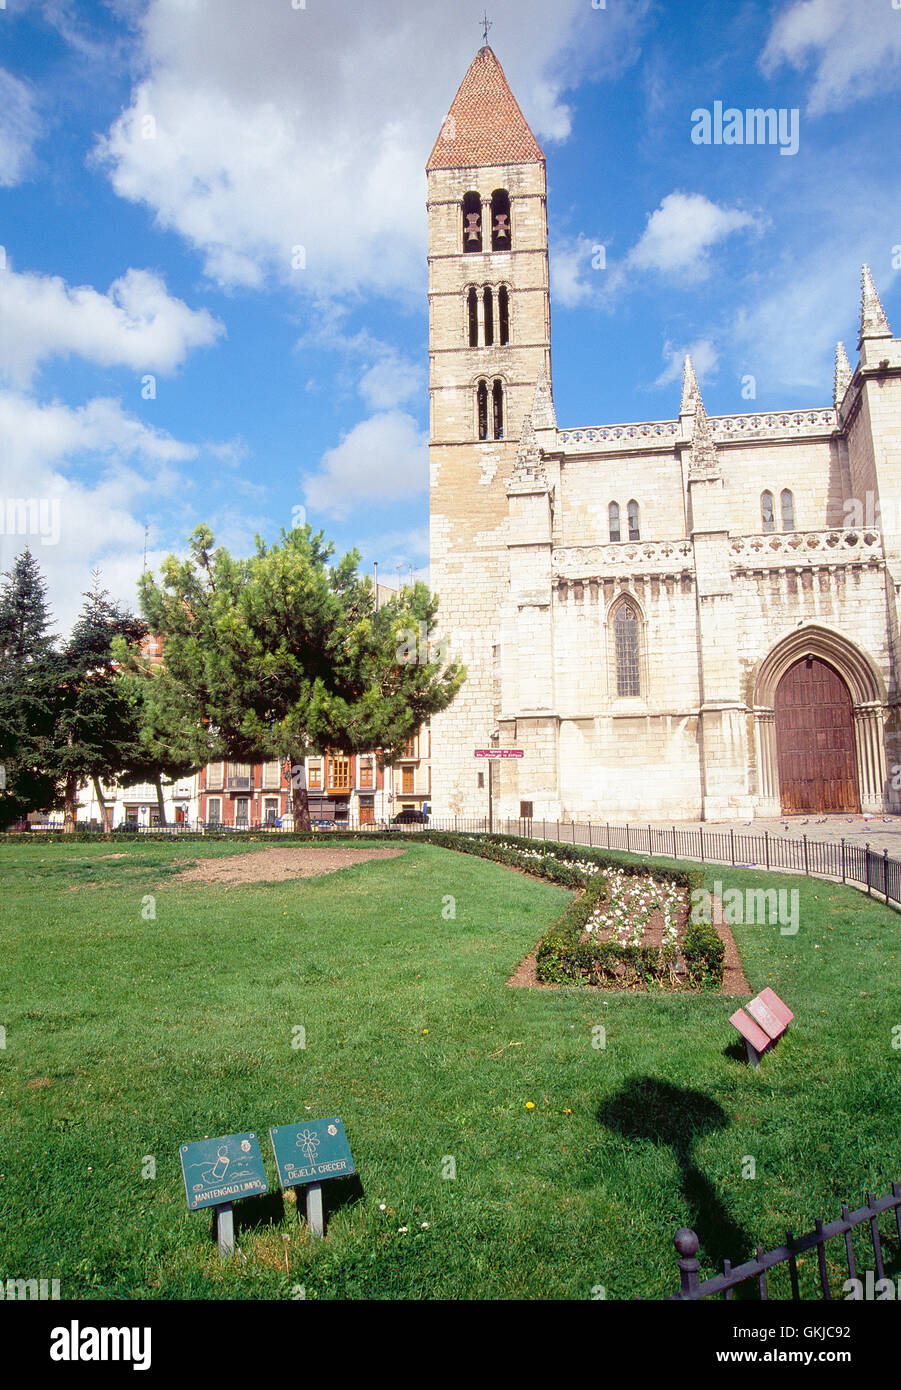 Facade of Santa Maria de la Antigua church. Valladolid, Spain. Stock Photo